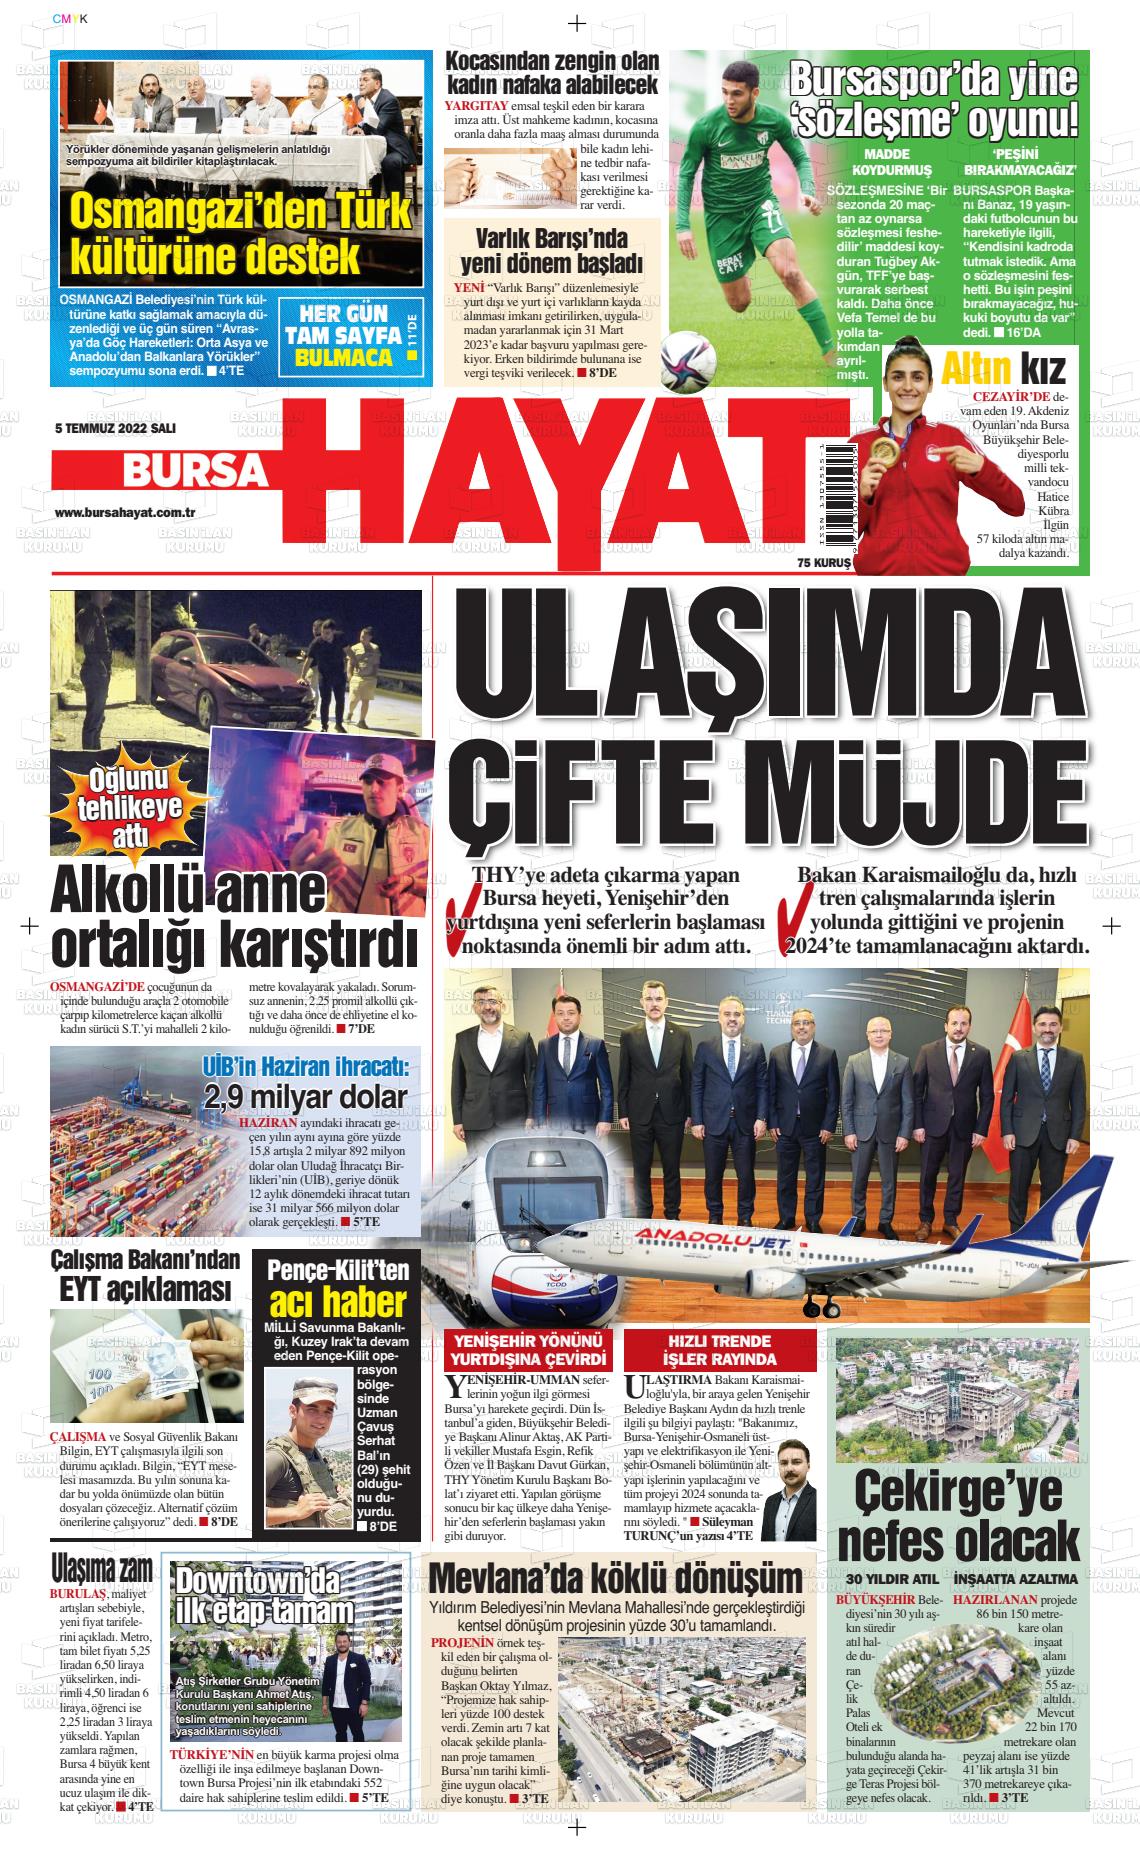 05 Temmuz 2022 Bursa Hayat Gazete Manşeti